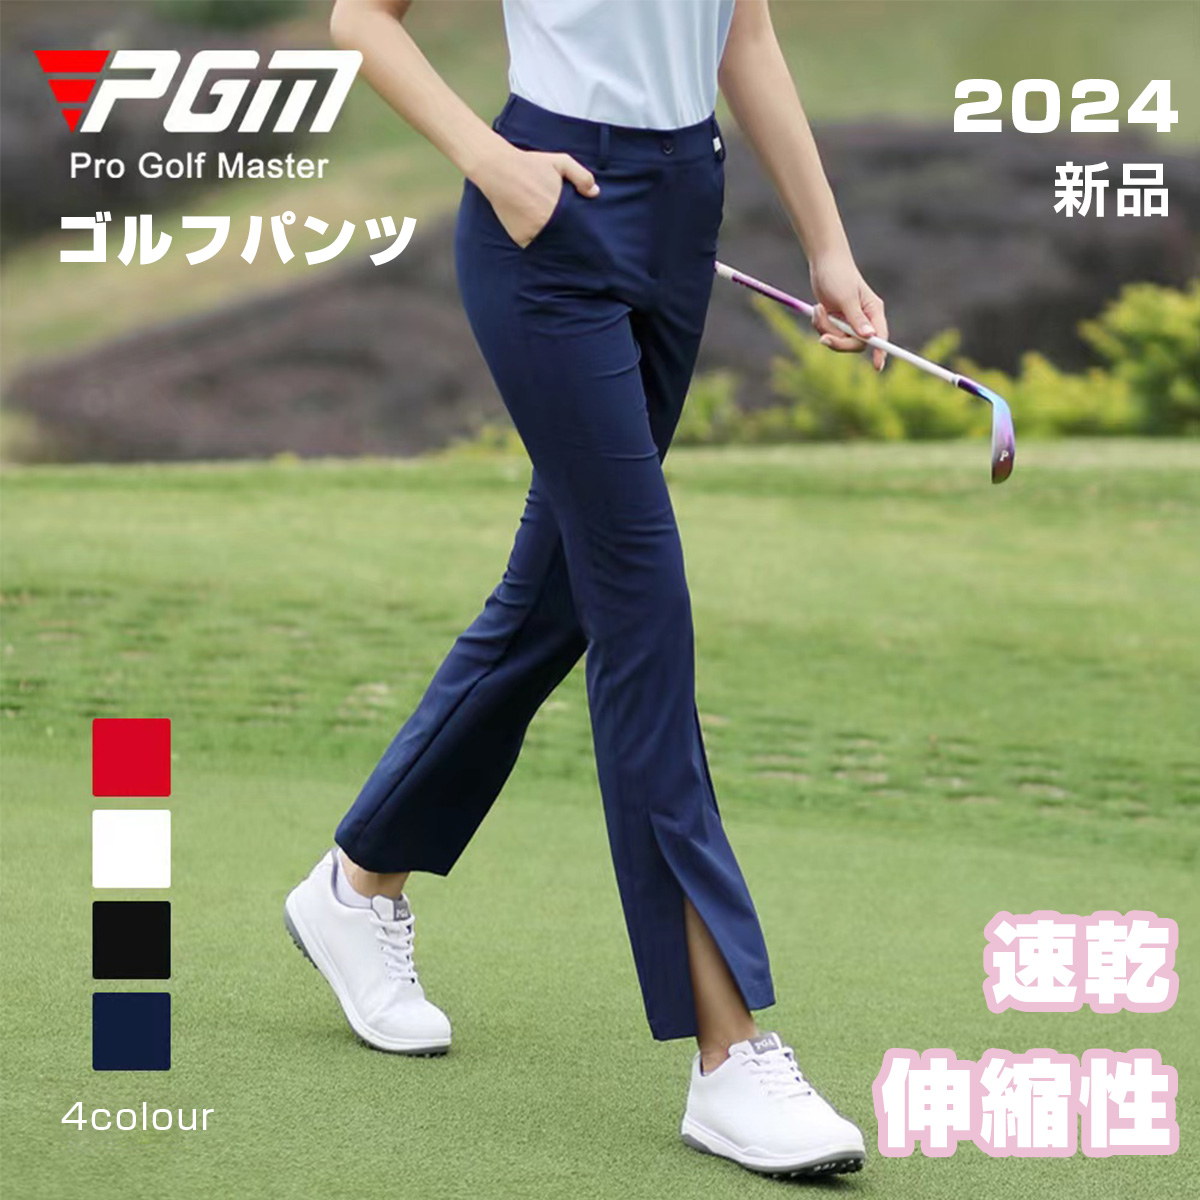 ゴルフパンツ レディース 通気 速乾 ゴルフウェア 女子 服装 シンプル